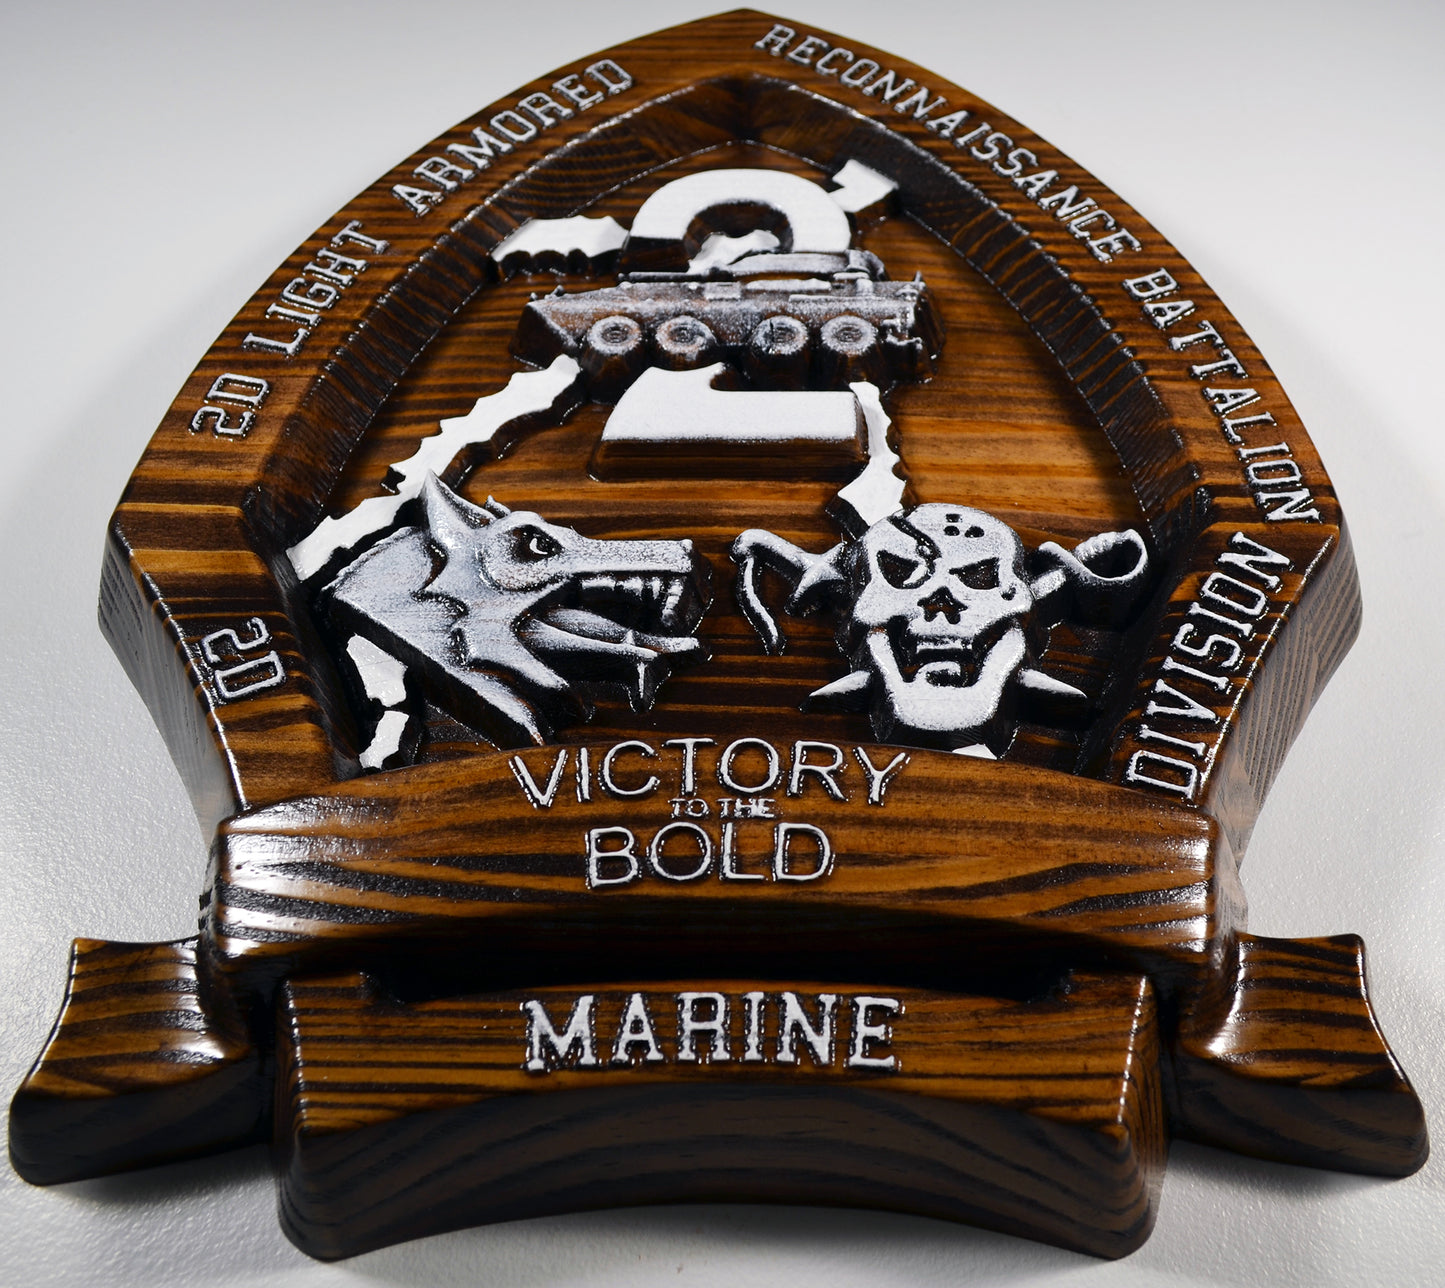 USMC 2nd Light Armored Reconnaissance Battalion, CNC 3d wood carving, military plaque